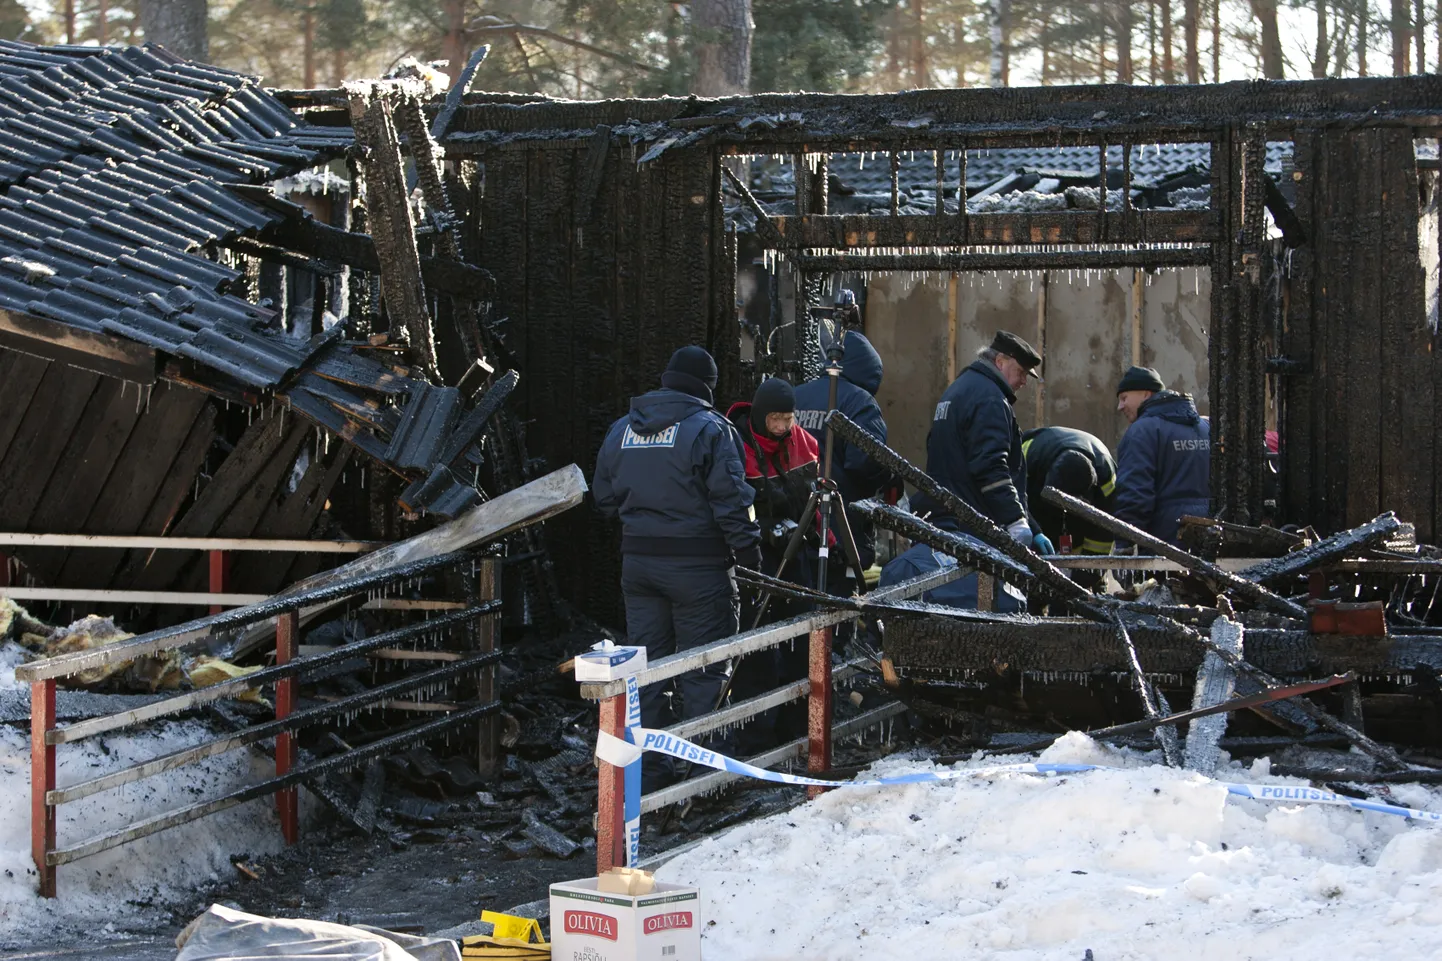 Haapsalu väikelastekodus puhkes 21. veebruaril 2011. tulekahju, milles kaotas elu kümme inimest. Hukkunute hulgas oli kolm tüdrukut ja viis poissi vanuses 7-16 aastat ning kaks täiskasvanud meessoost hooldusalust vanuses 20-21 eluaastat.